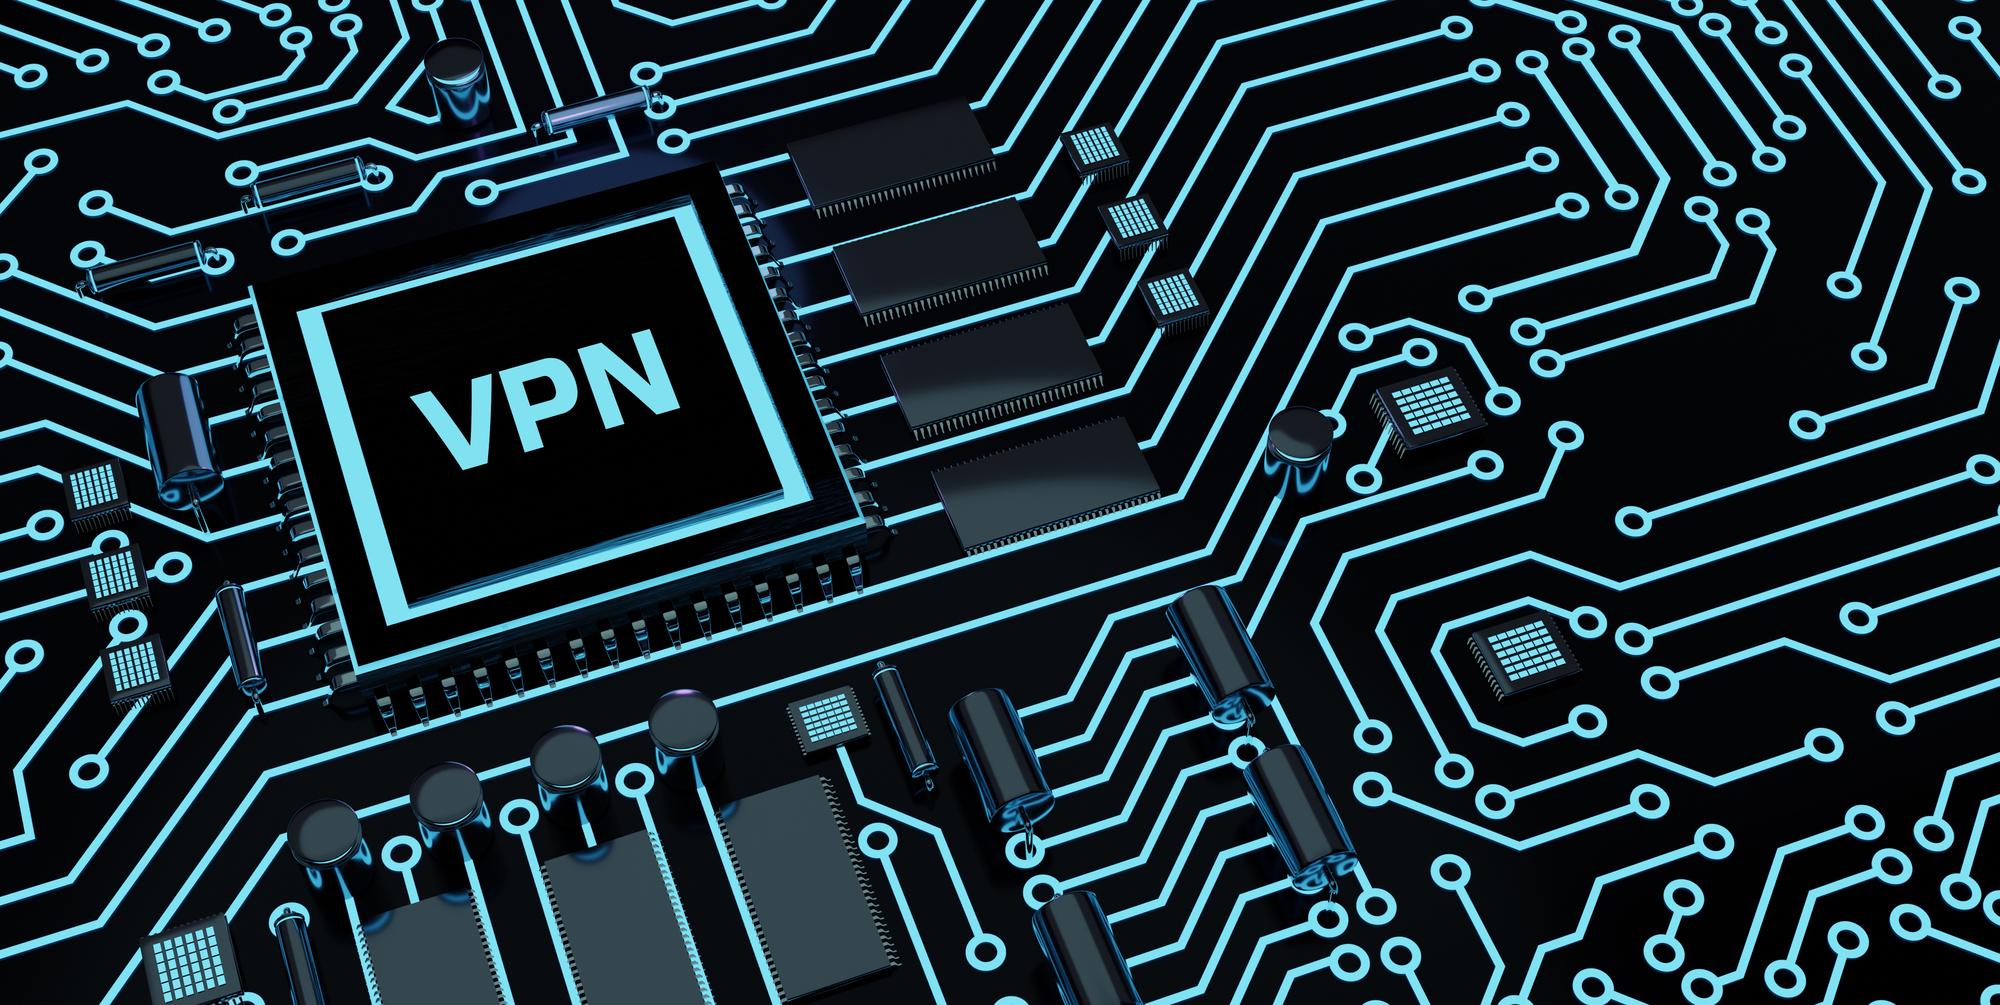 Darstellung eines VPN-Chips in einem Mainboard